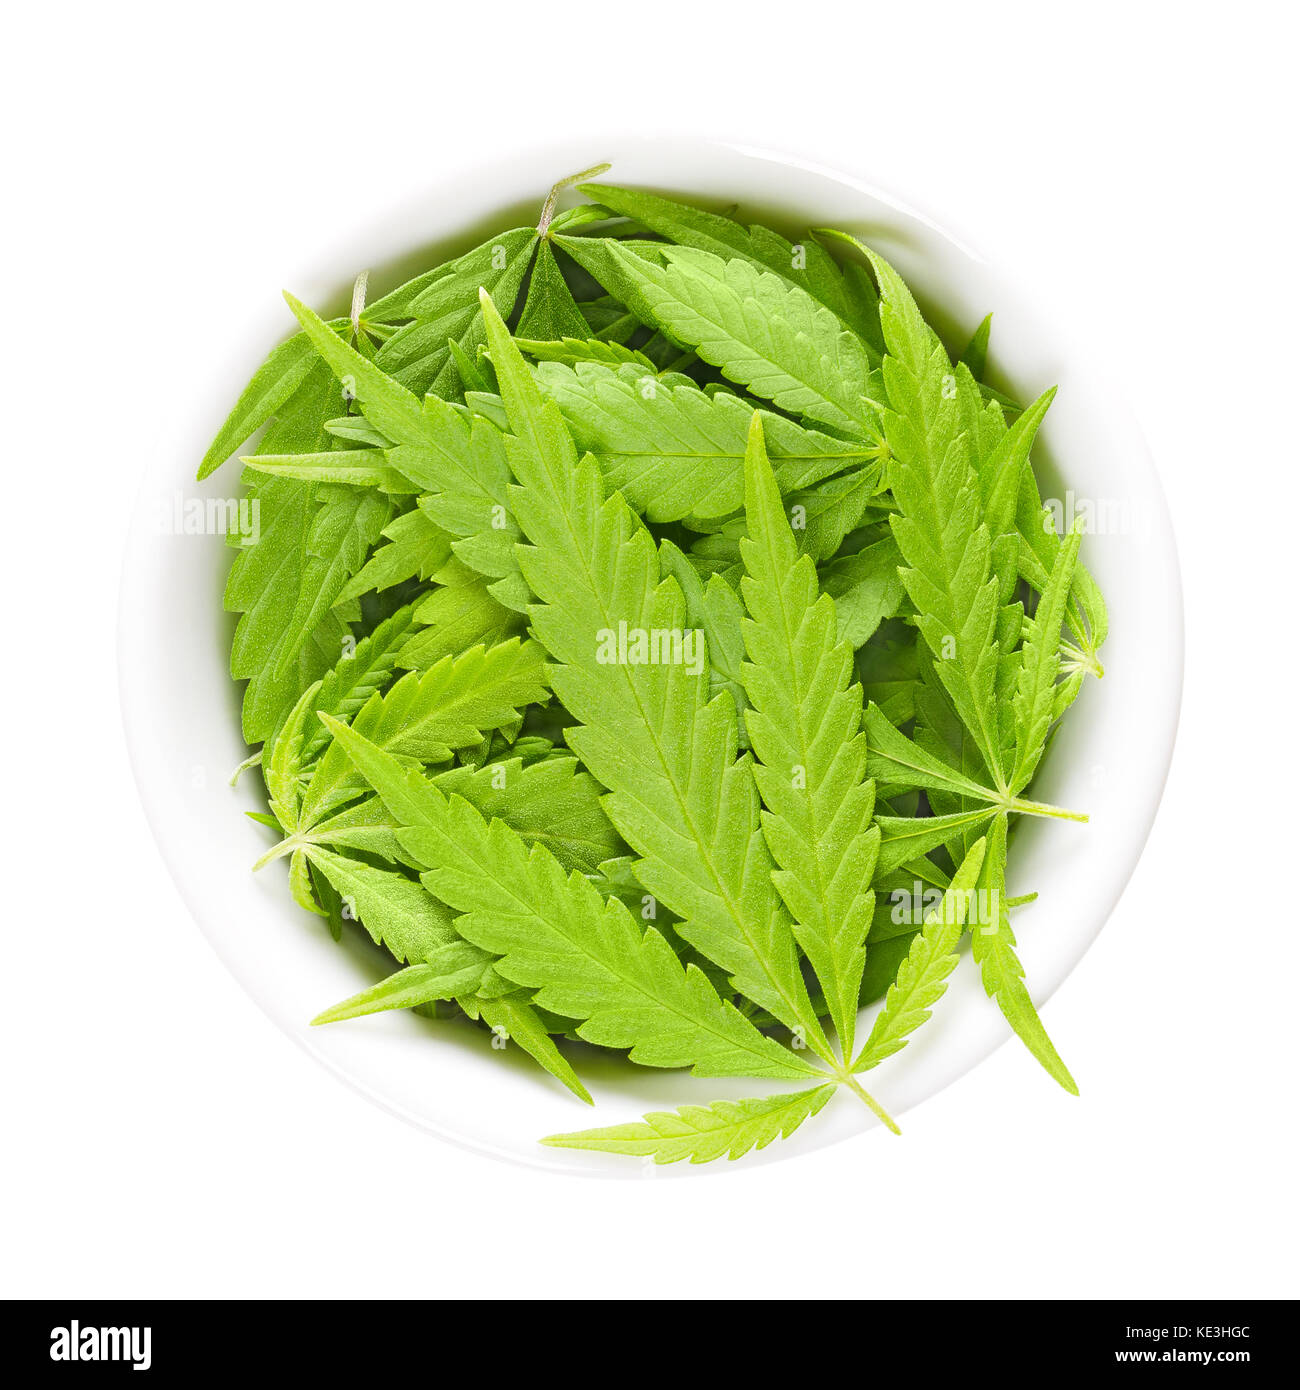 Cannabis Blätter in weiß Porzellan Schüssel. frische Hanf Blätter von Cannabis ruderalis. niedrige THC-Arten als Tee und als Kräutermedizin verwendet. Stockfoto